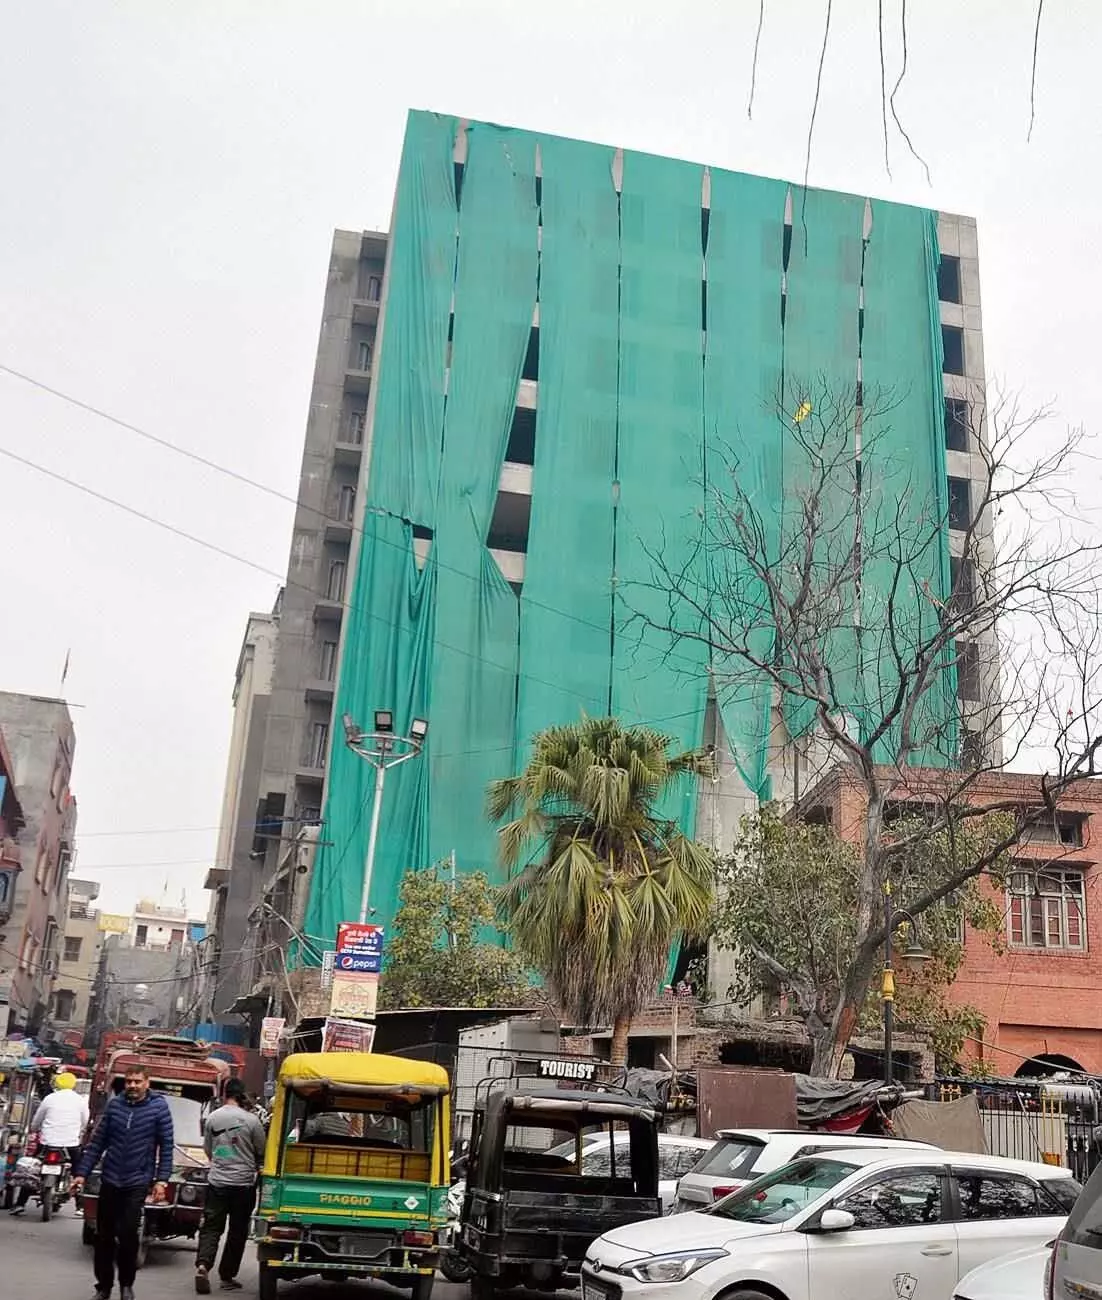 बिल्डिंग बायलॉज की अनदेखी के चलते शहर में अवैध होटल खुल रहे